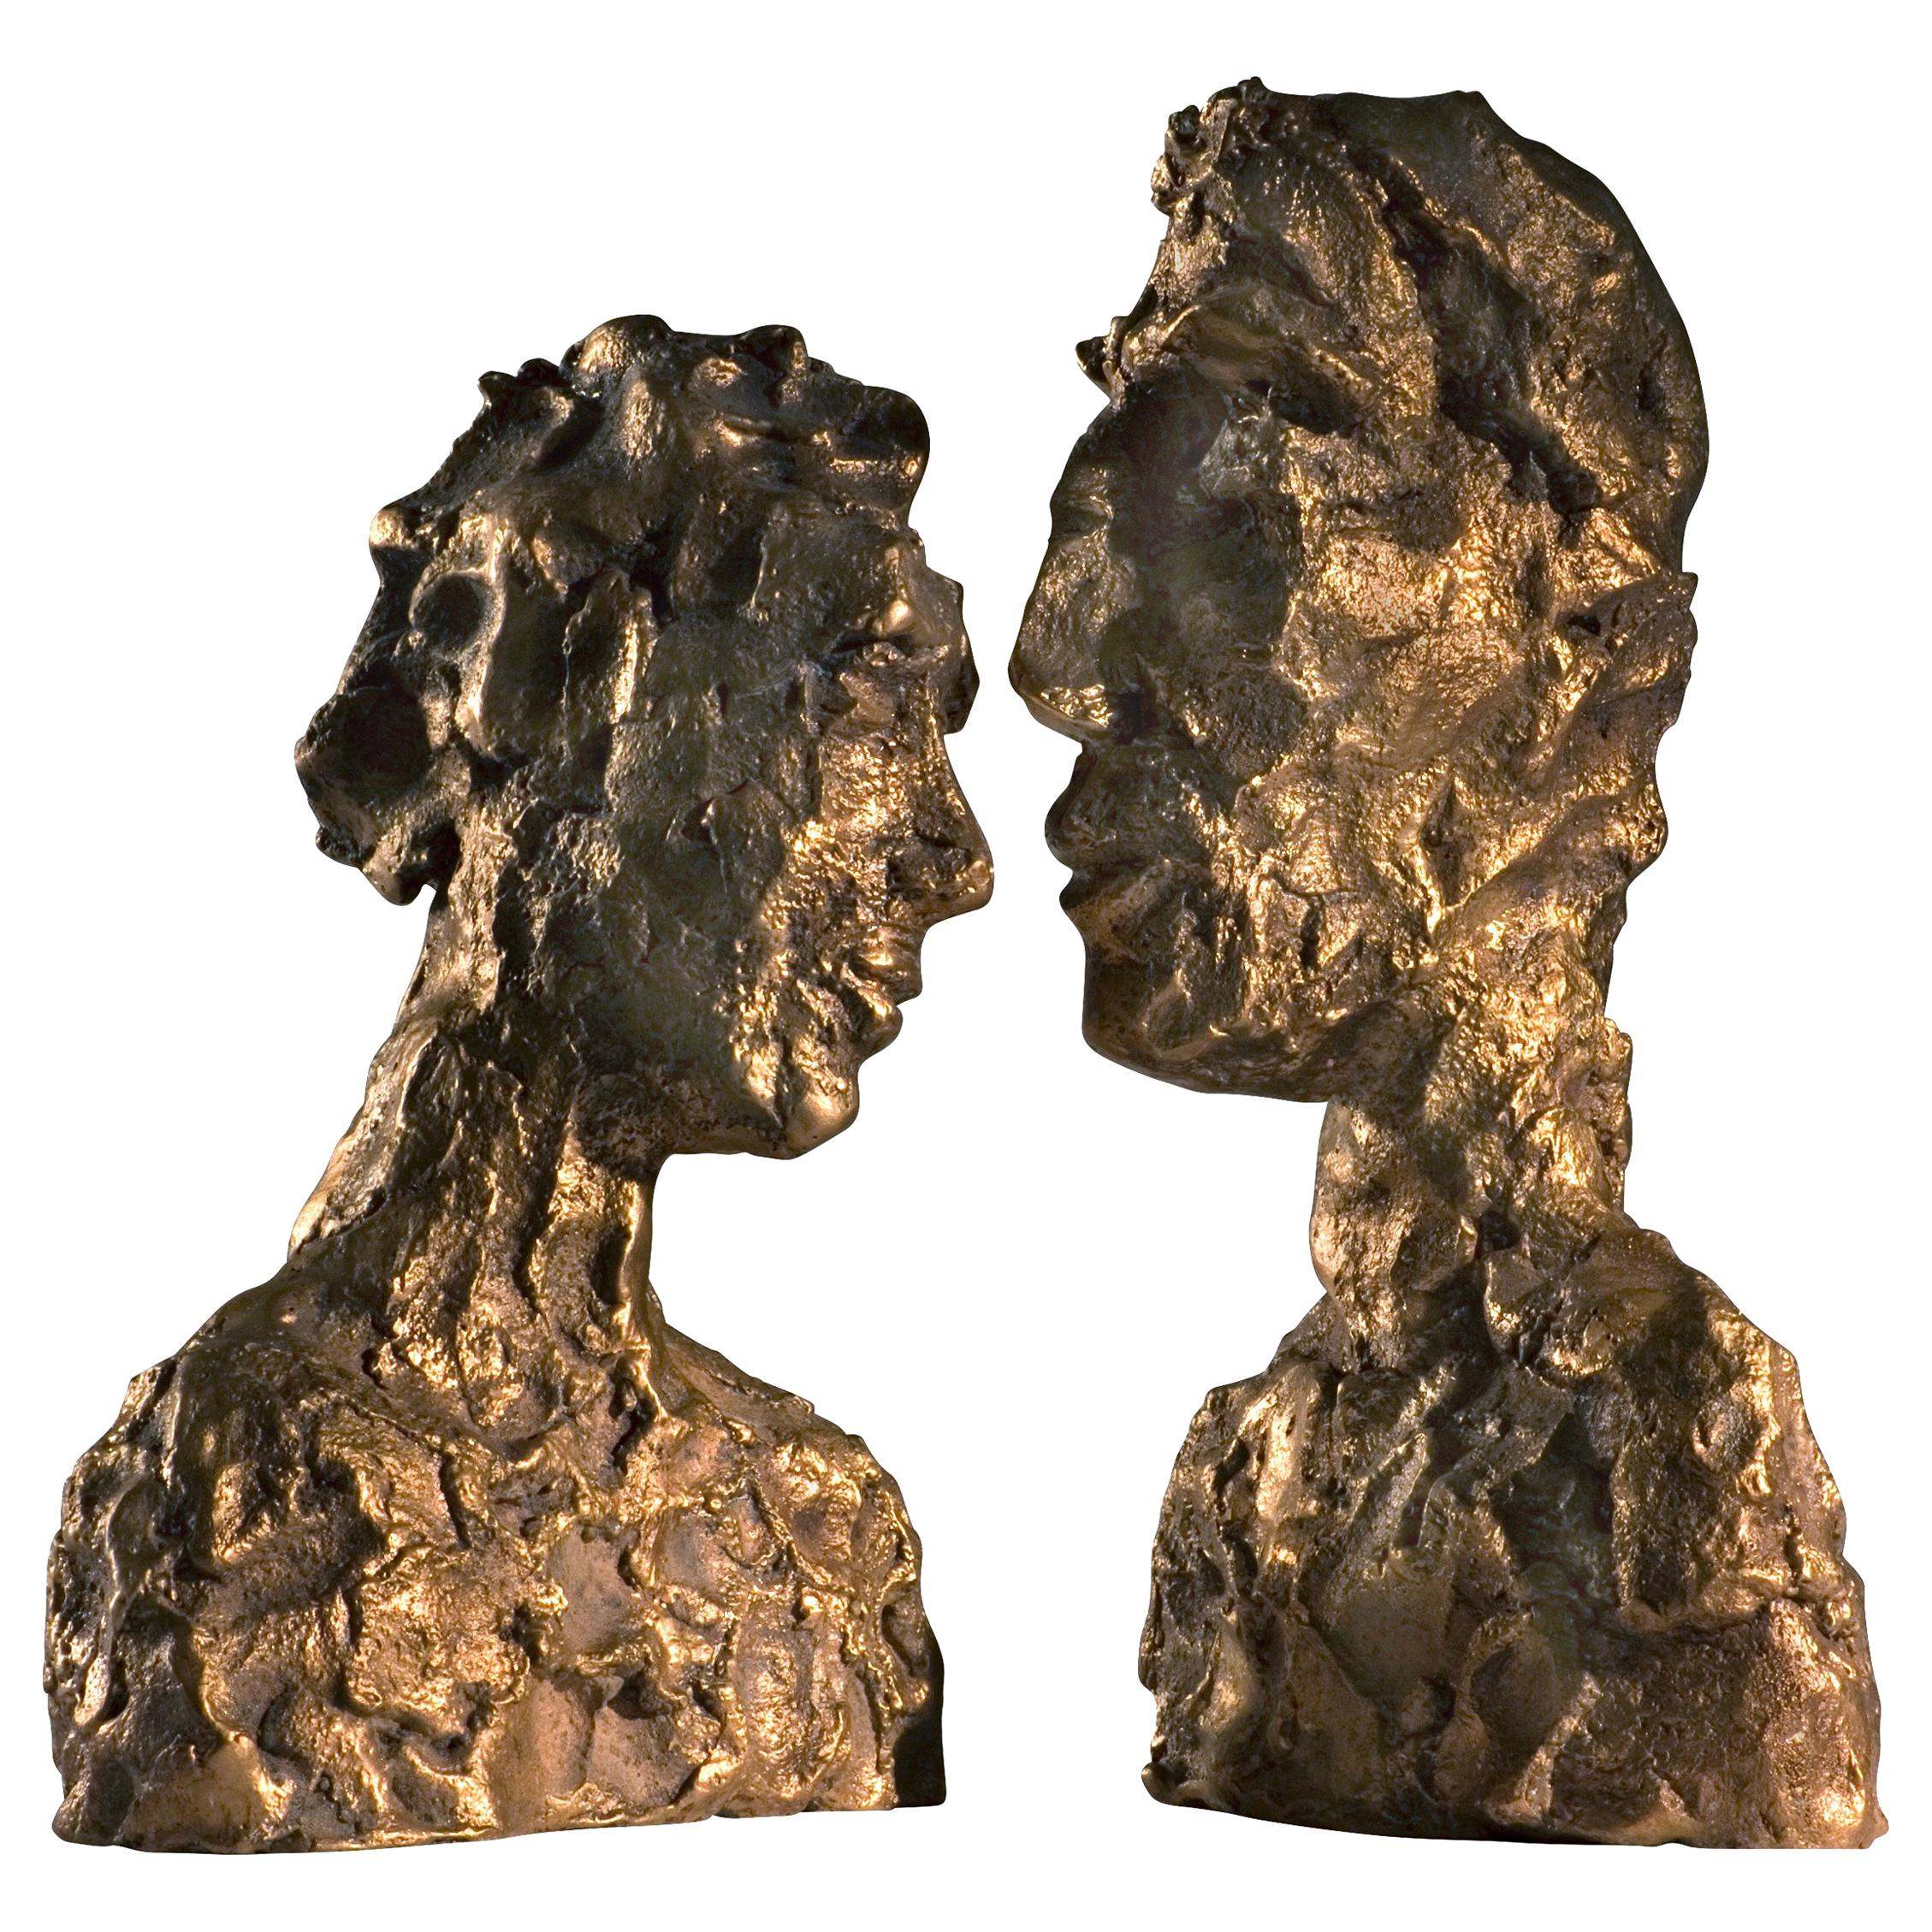 Sculpture contemporaine en bronze brut du 21e siècle, "Emotion" de Margit Wittig